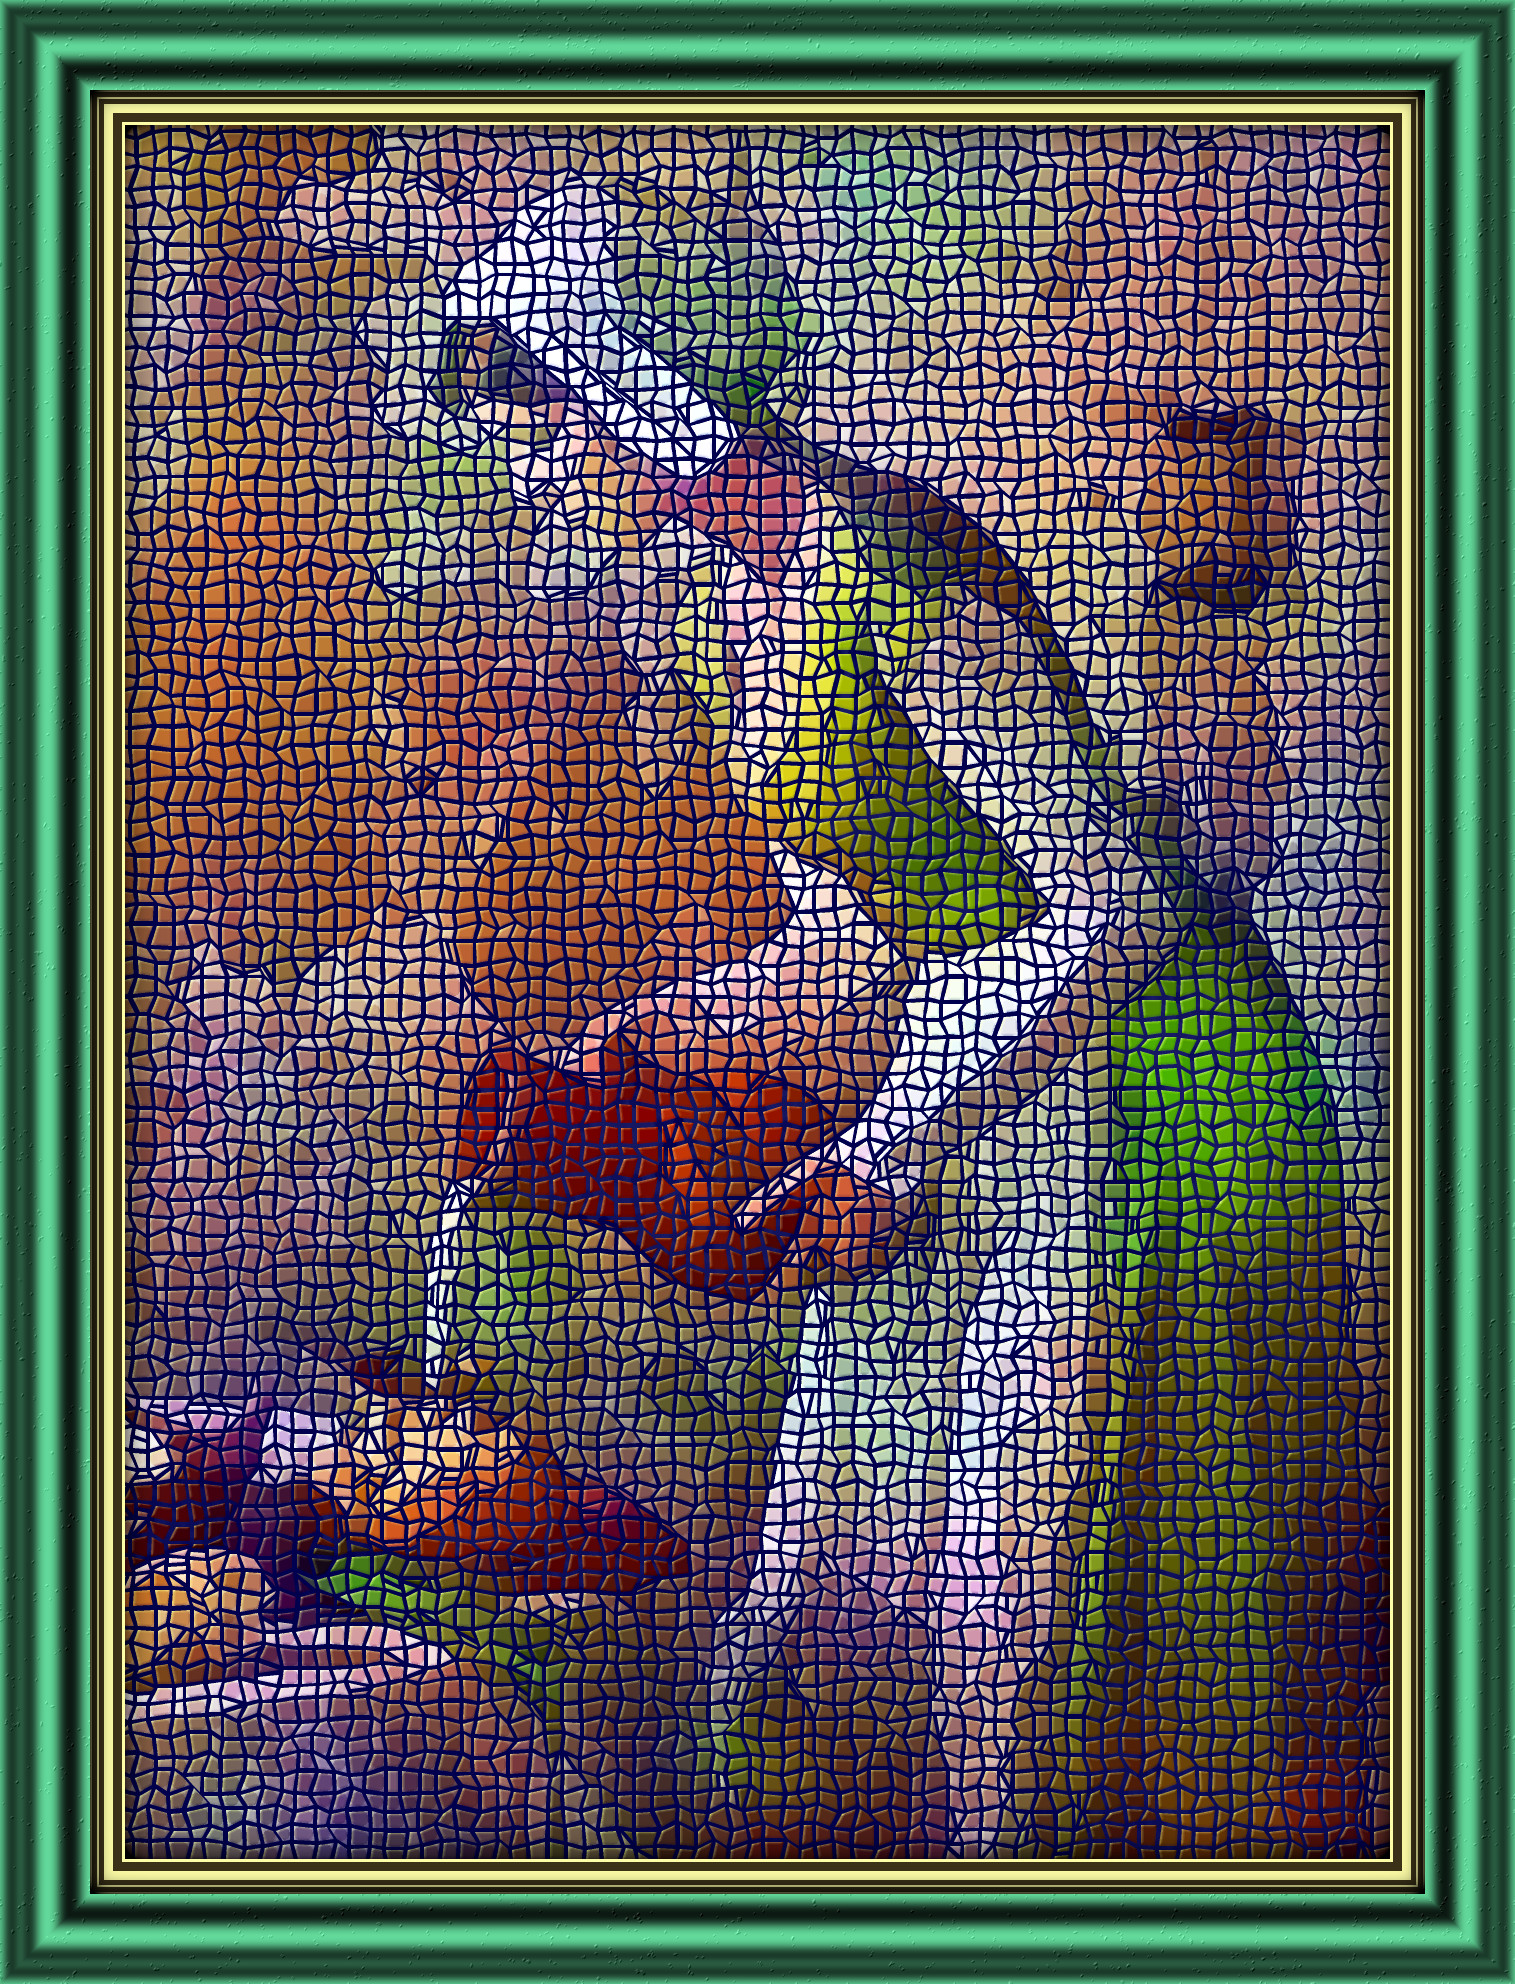 2024-03-21 08-10-56fcf0e91e9319576a4ba06bffe6e5557f, having a poster-mosaic look (preset=3000,0,True,0,0,0.48,0.02,0.0,1.1,0.5,True,5,RGB (0.211606790367, 0.470588235294, 0.333480411509, 1.0)).jpg